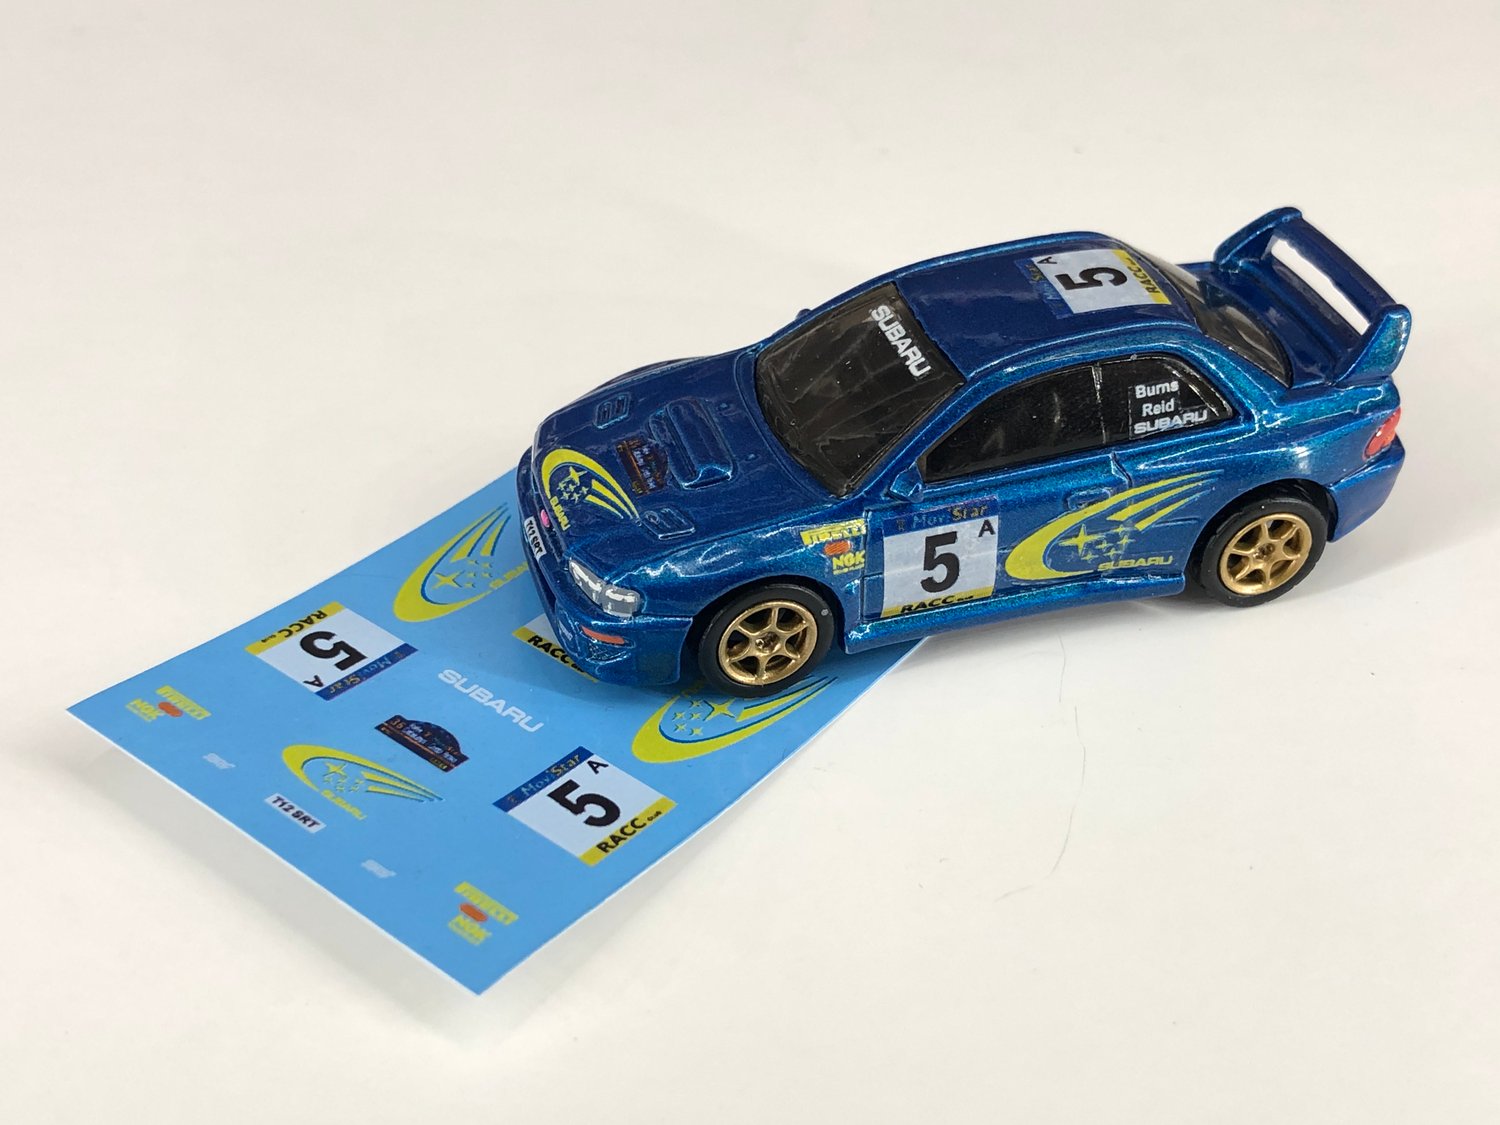 DECALS - Subaru Impreza WRC - Richard Burns 